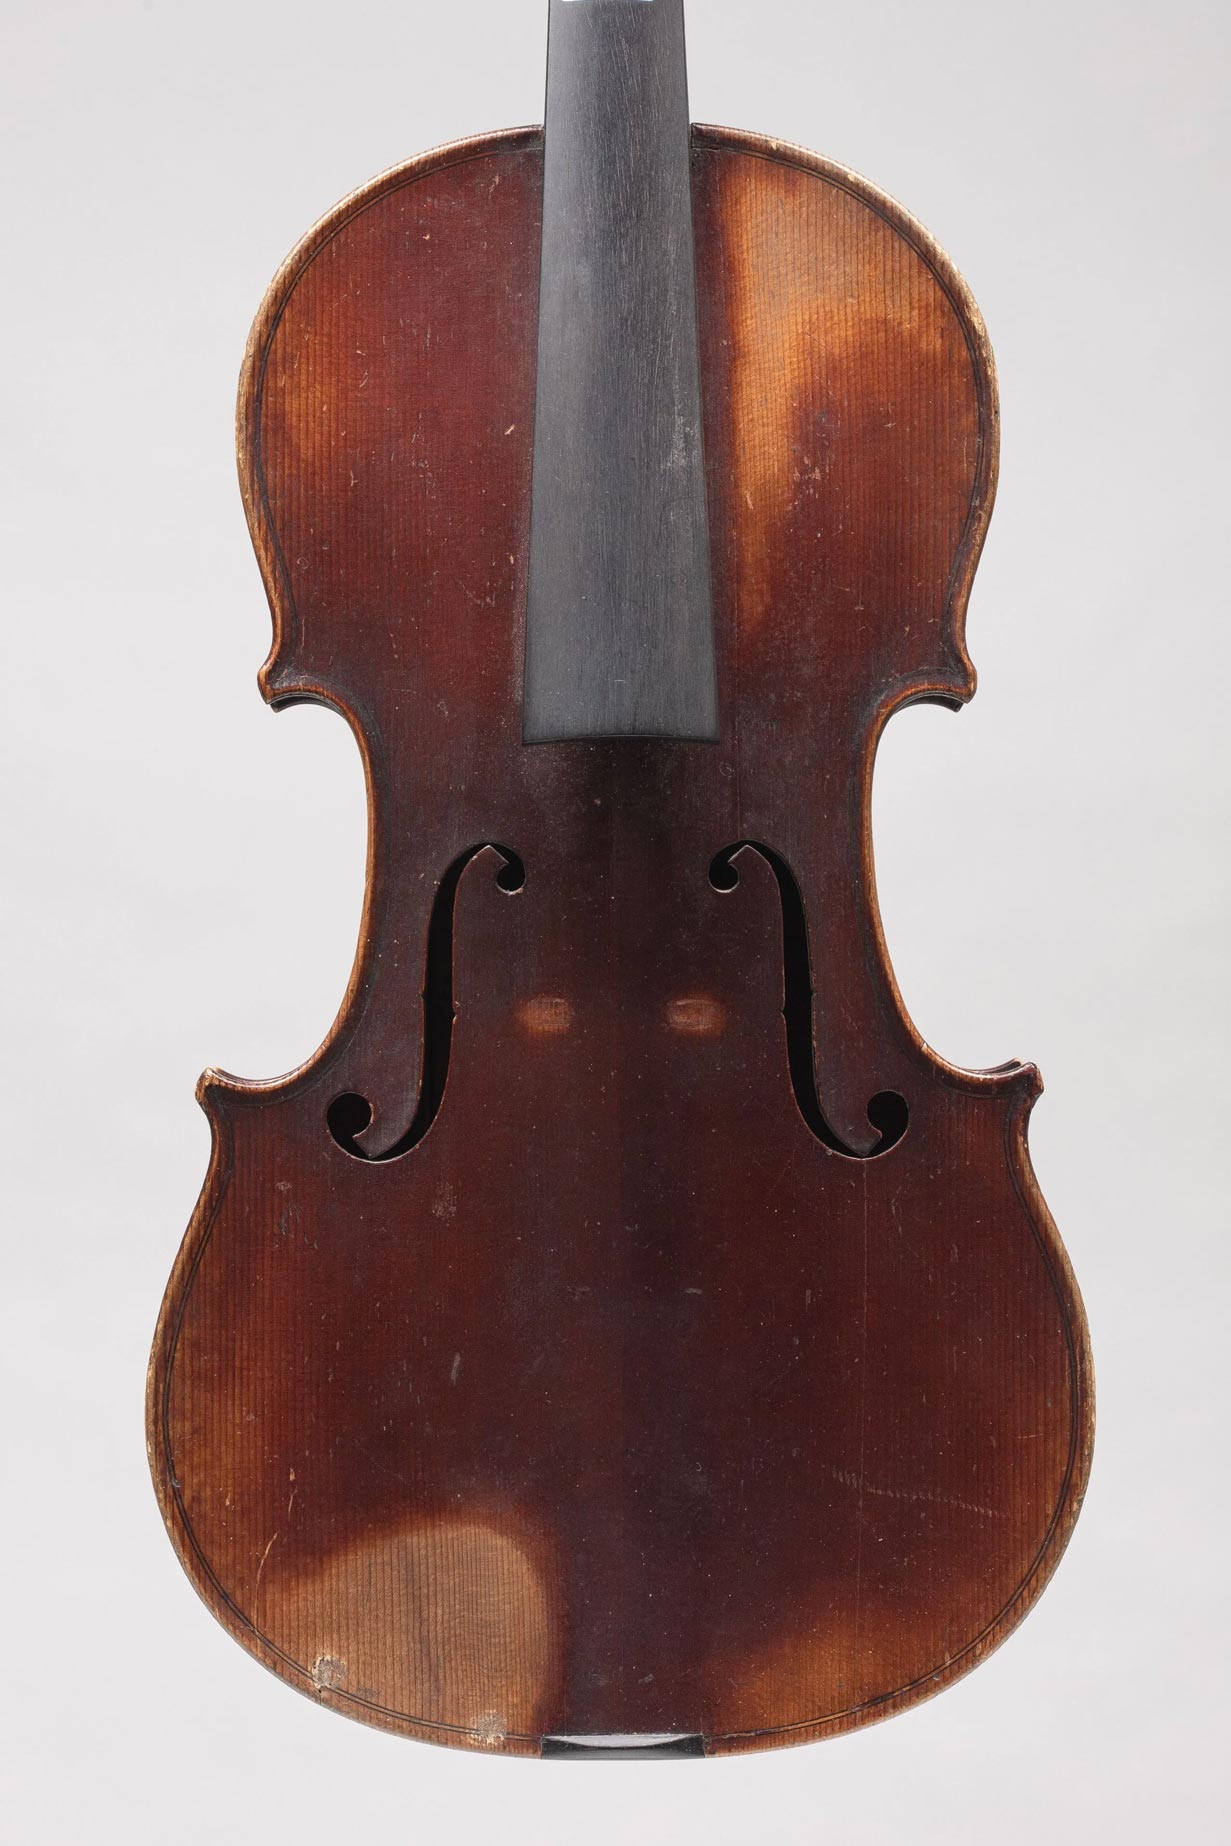 Violon de Joseph HEL Instrument mis en vente par Vichy Enchères le 3 juin 2021 © C. Darbelet